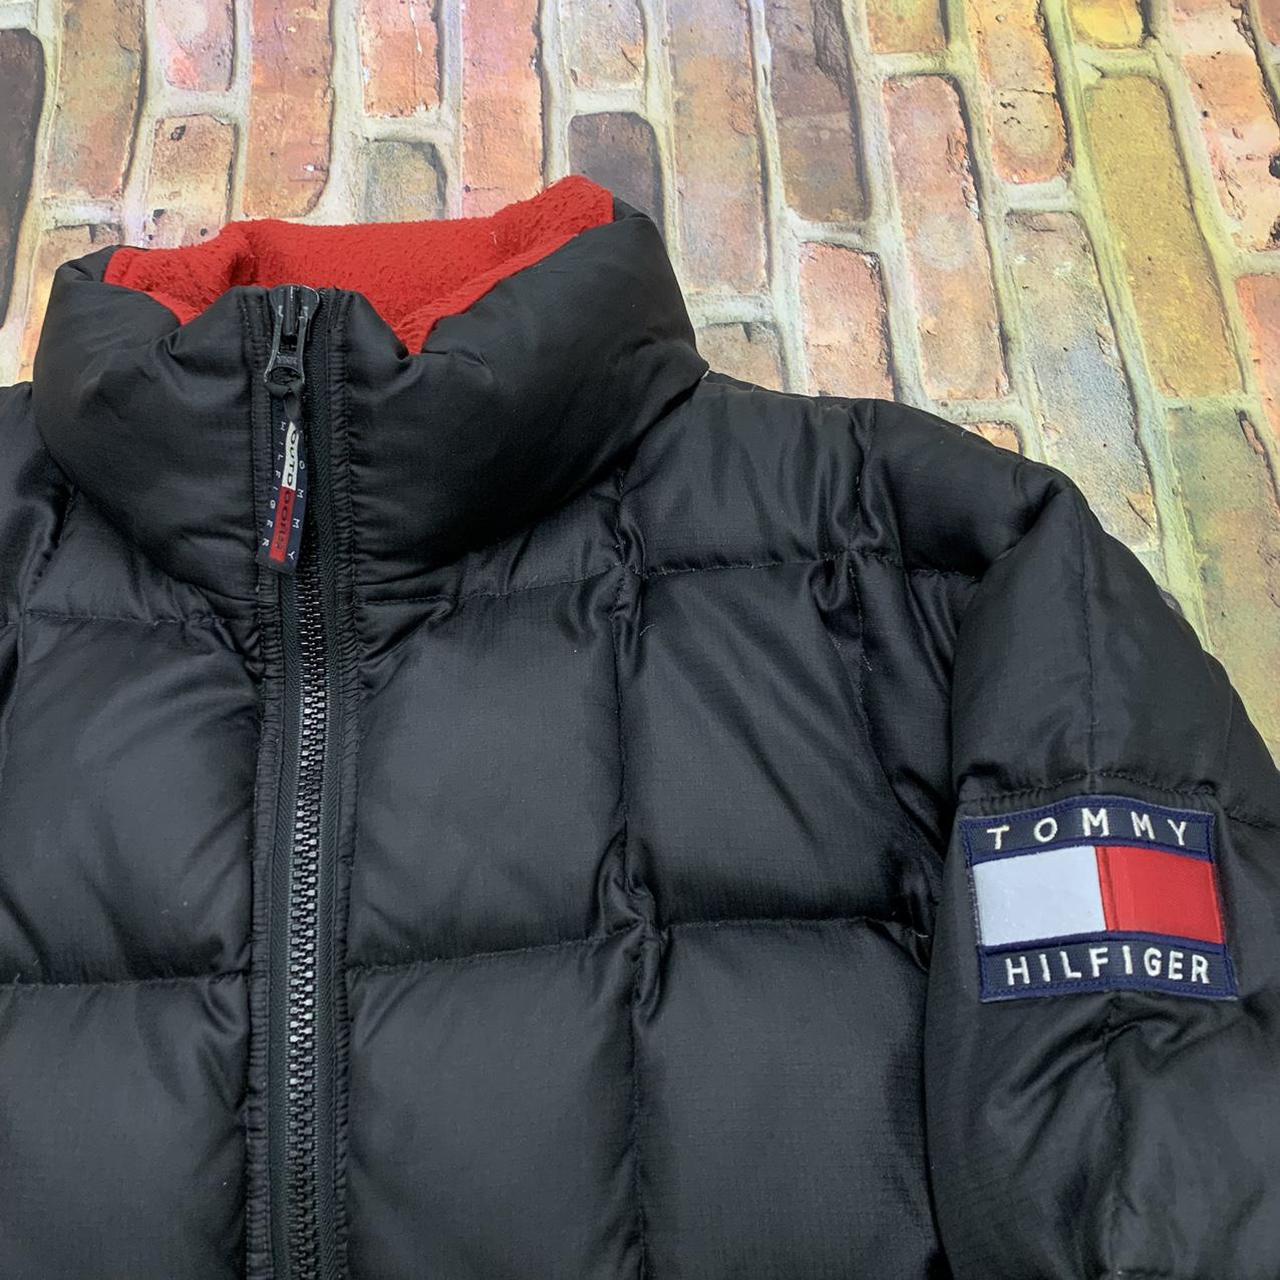 Vintage Tommy Hilfiger Outdoors puffer jacket in... - Depop